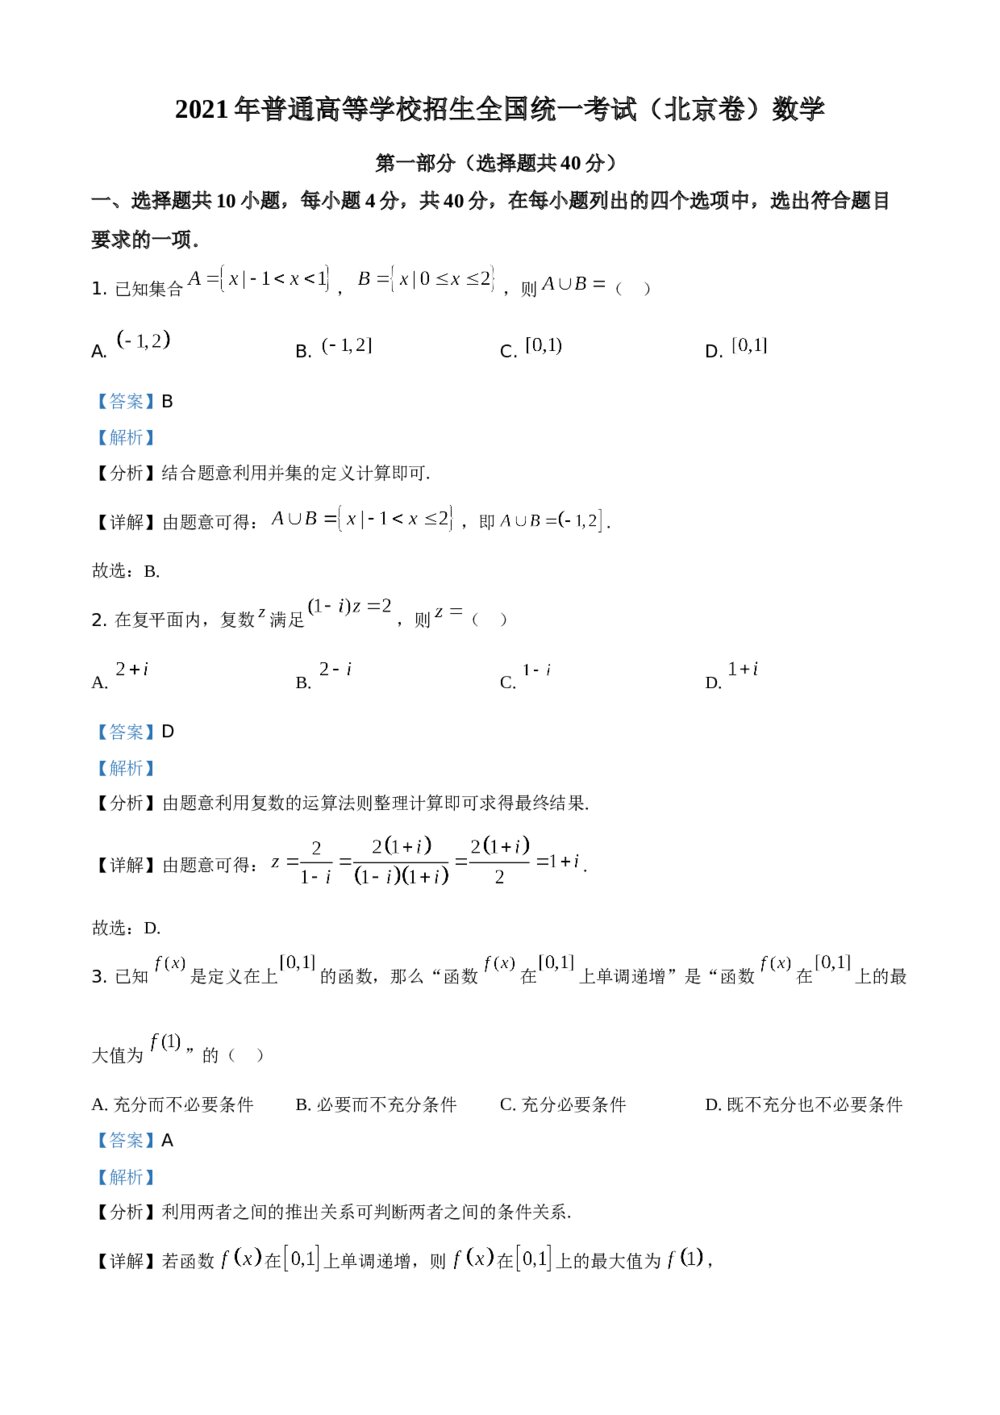 2021年北京市高考数学试题试卷(原卷板)+(参考答案解析)